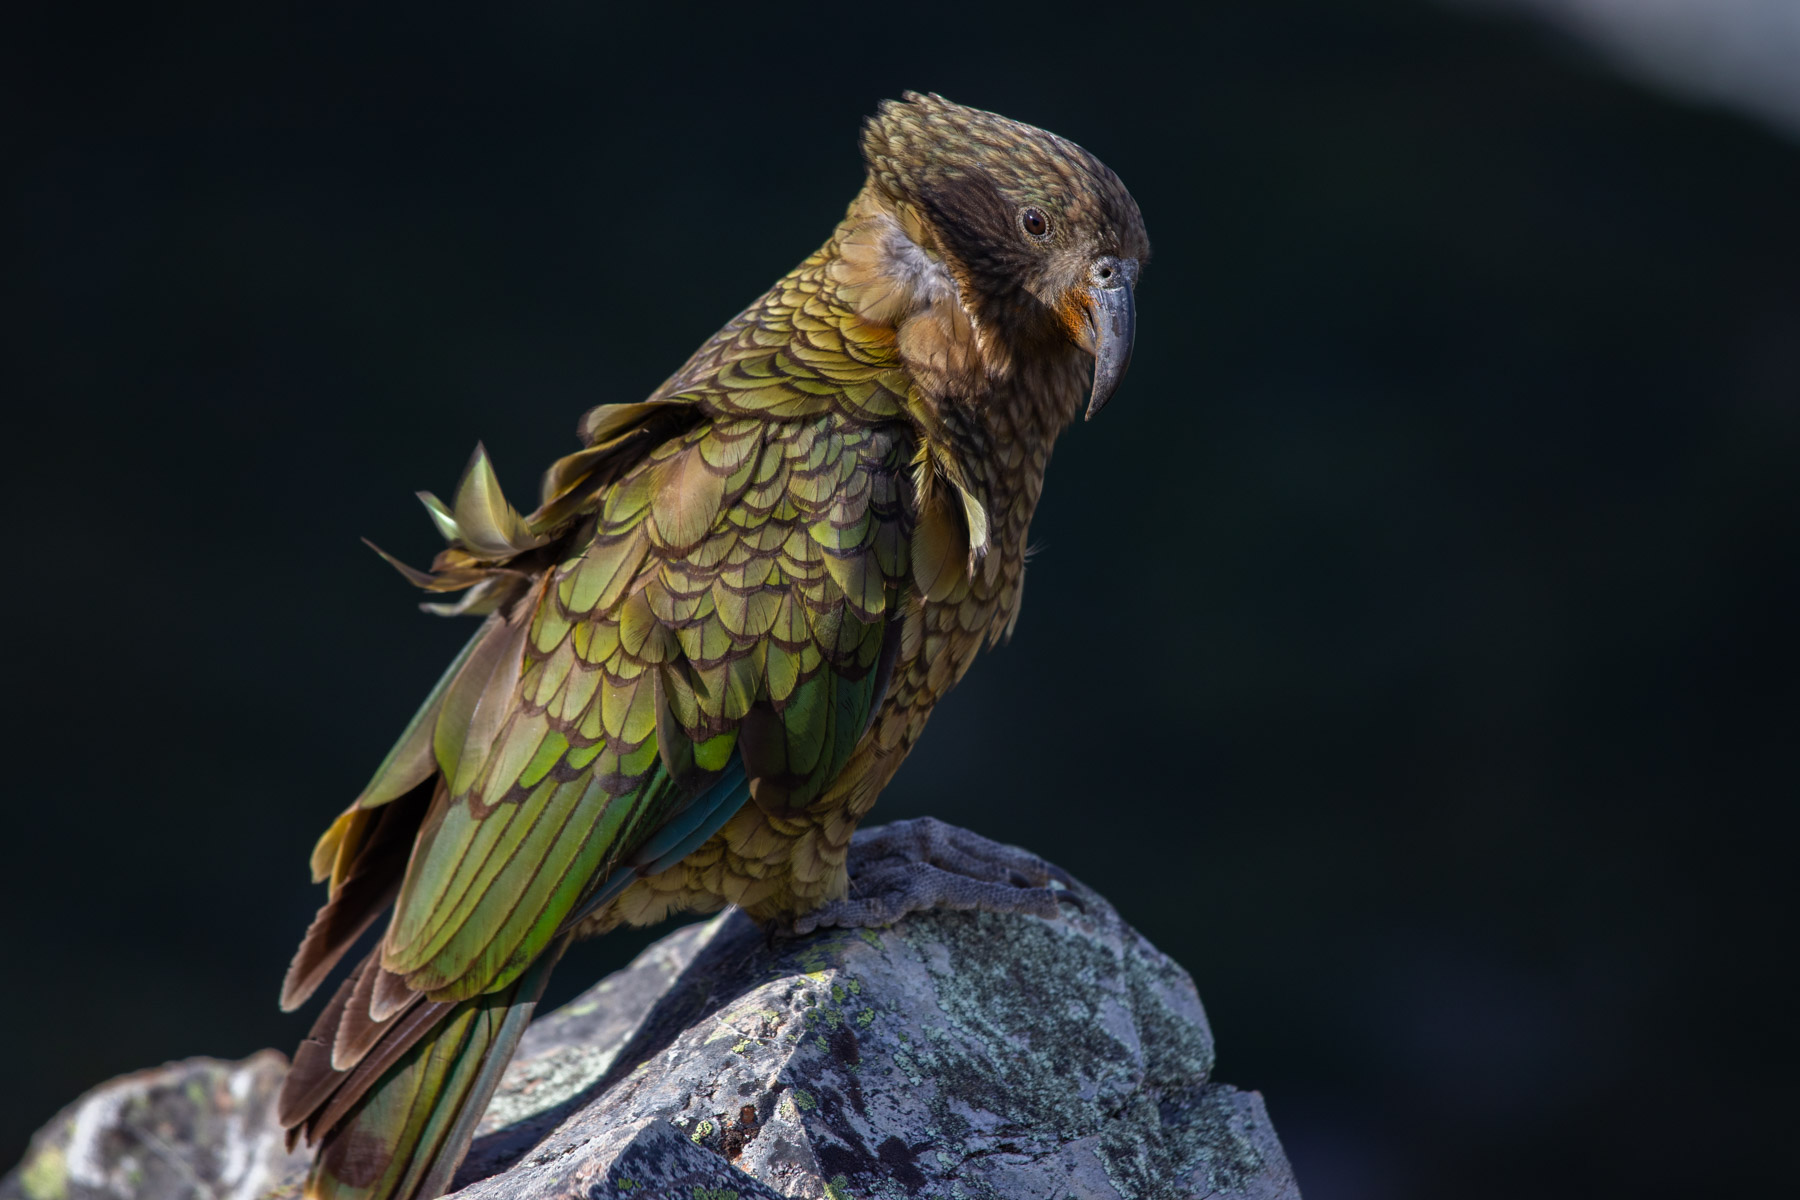 Un perroquet Kea posé sur une roche regarde le photographe.